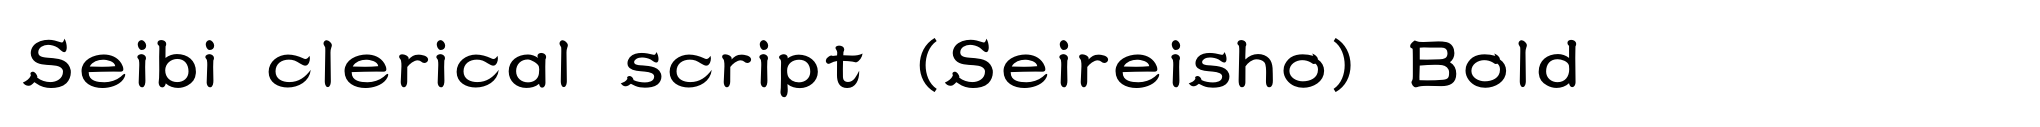 Seibi clerical script (Seireisho) Bold image